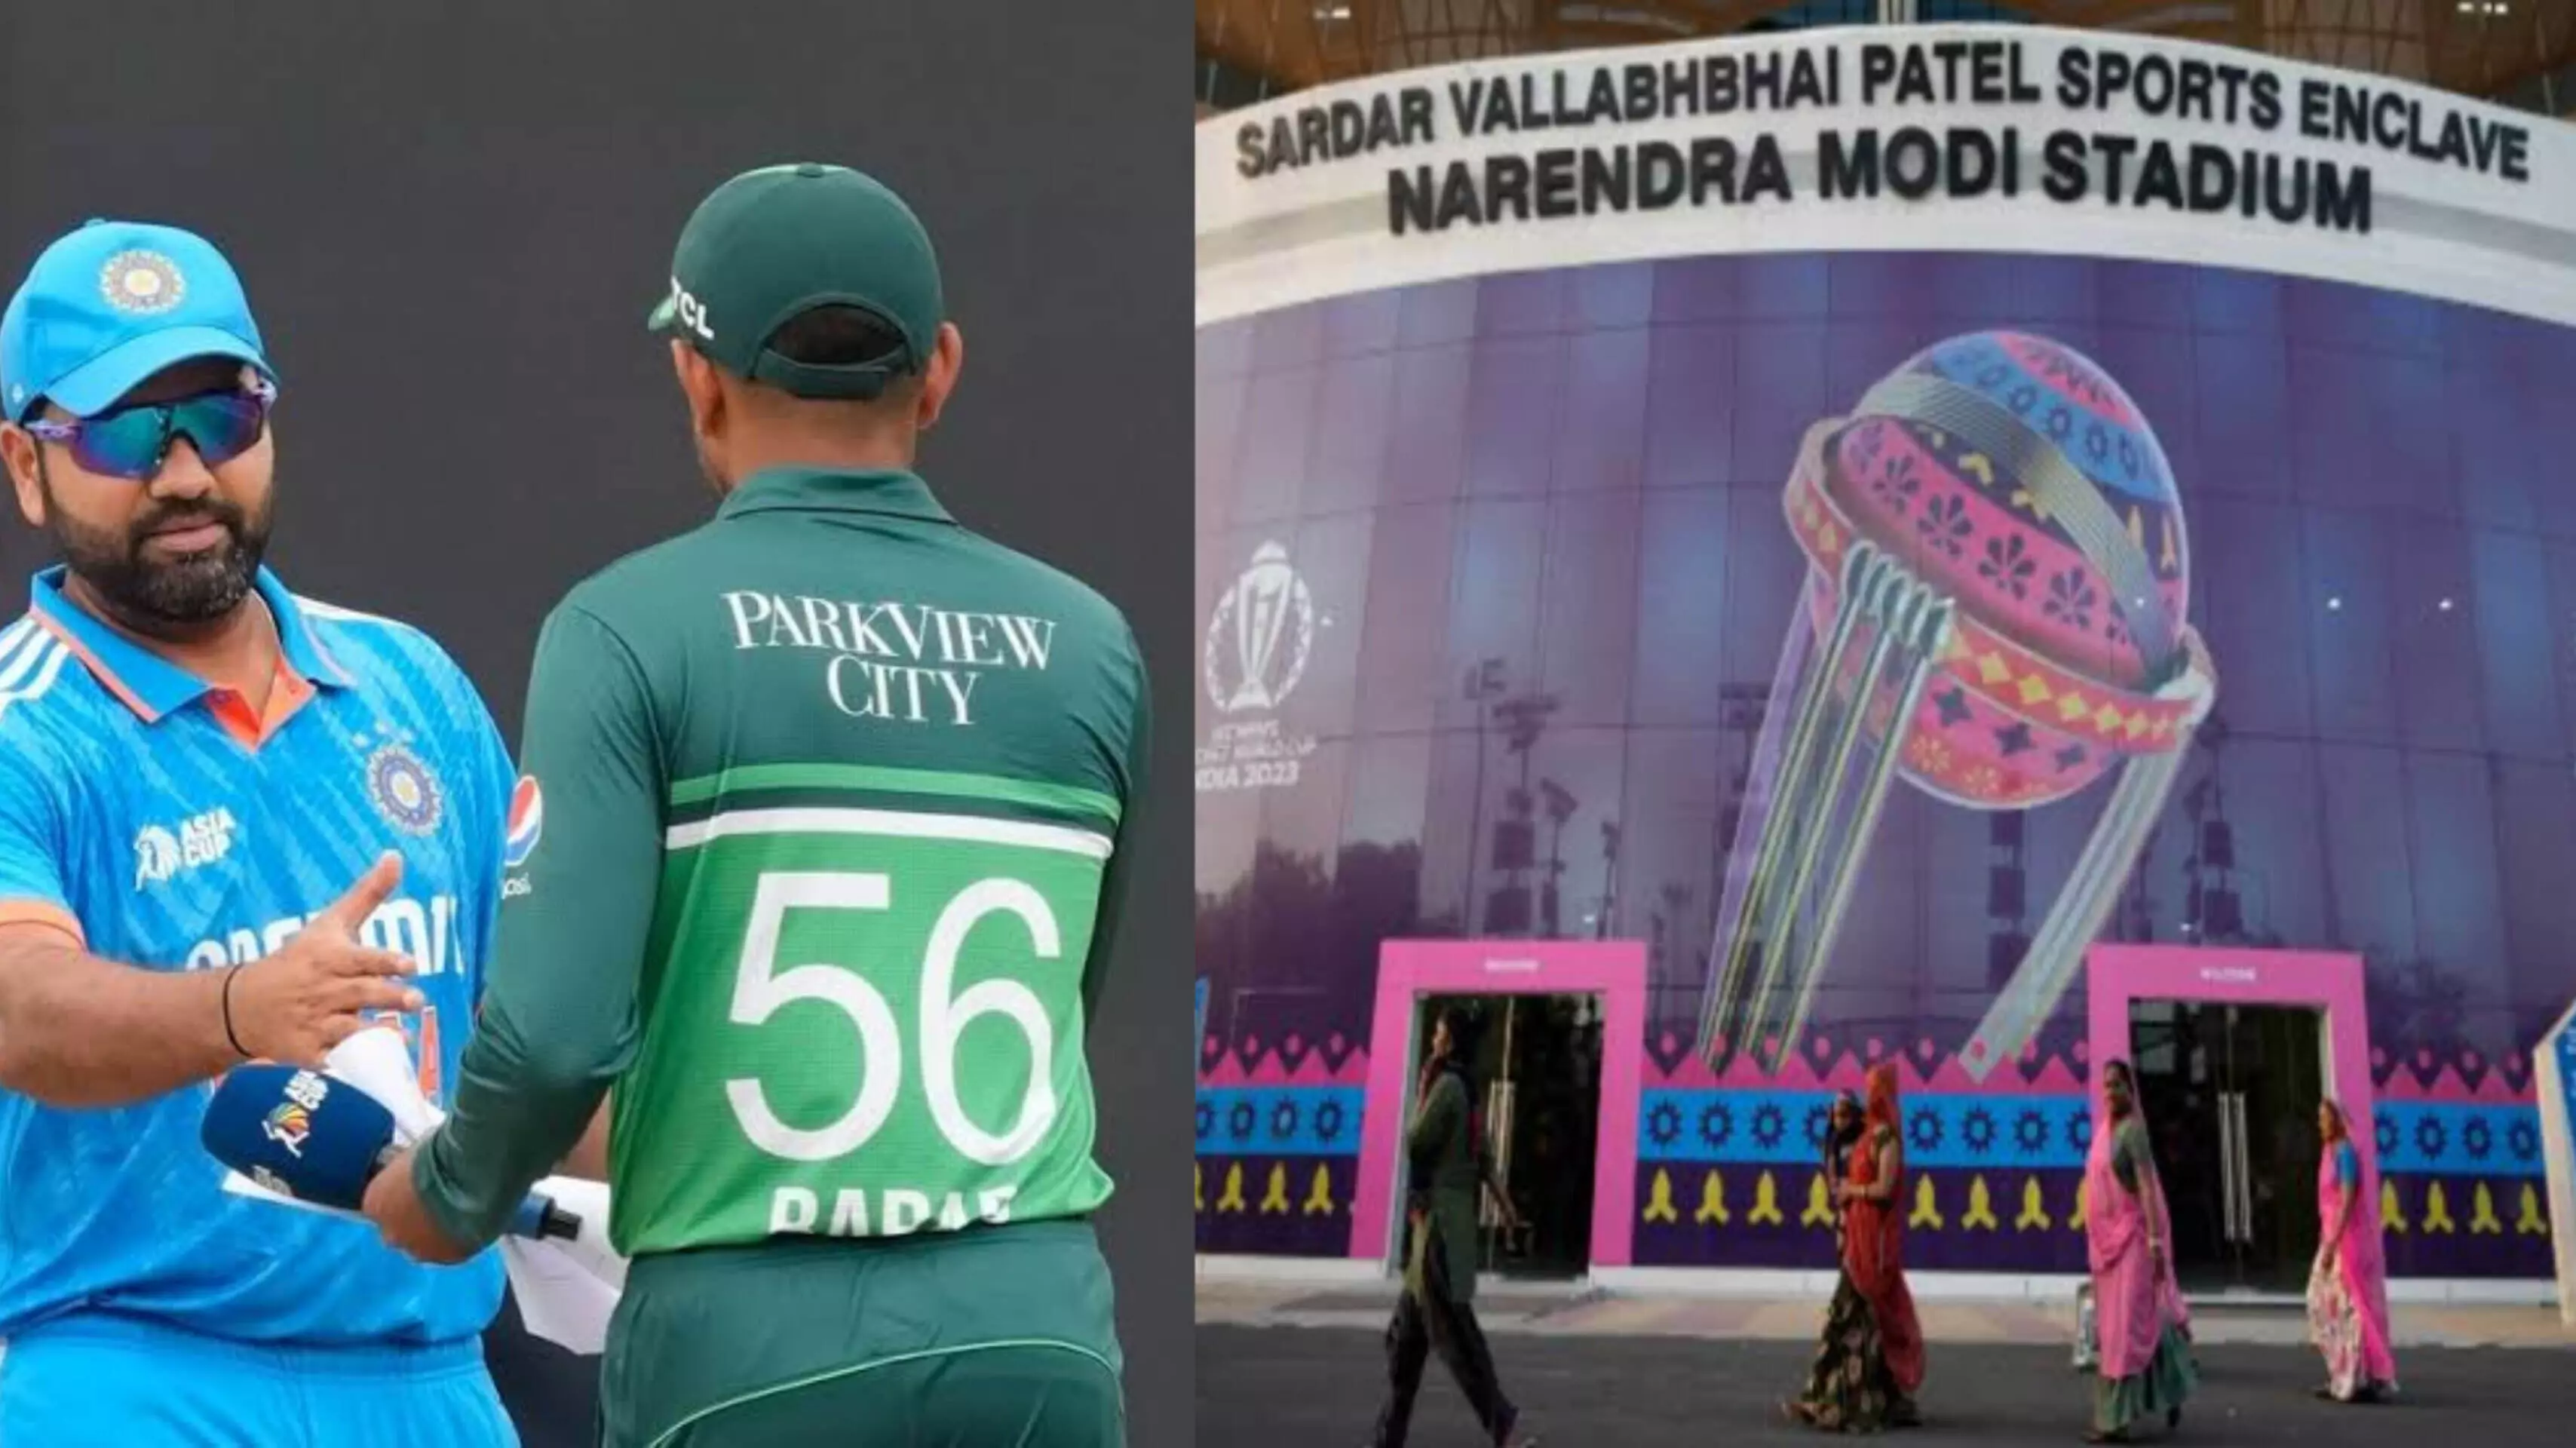 IND vs PAK World Cup 2023: बहुप्रतीक्षित मैच से पहले होगा शानदार जश्न, बॉलीवुड सिंगर के परफॉमेंस से लगेगा मनोरंजन का तड़का